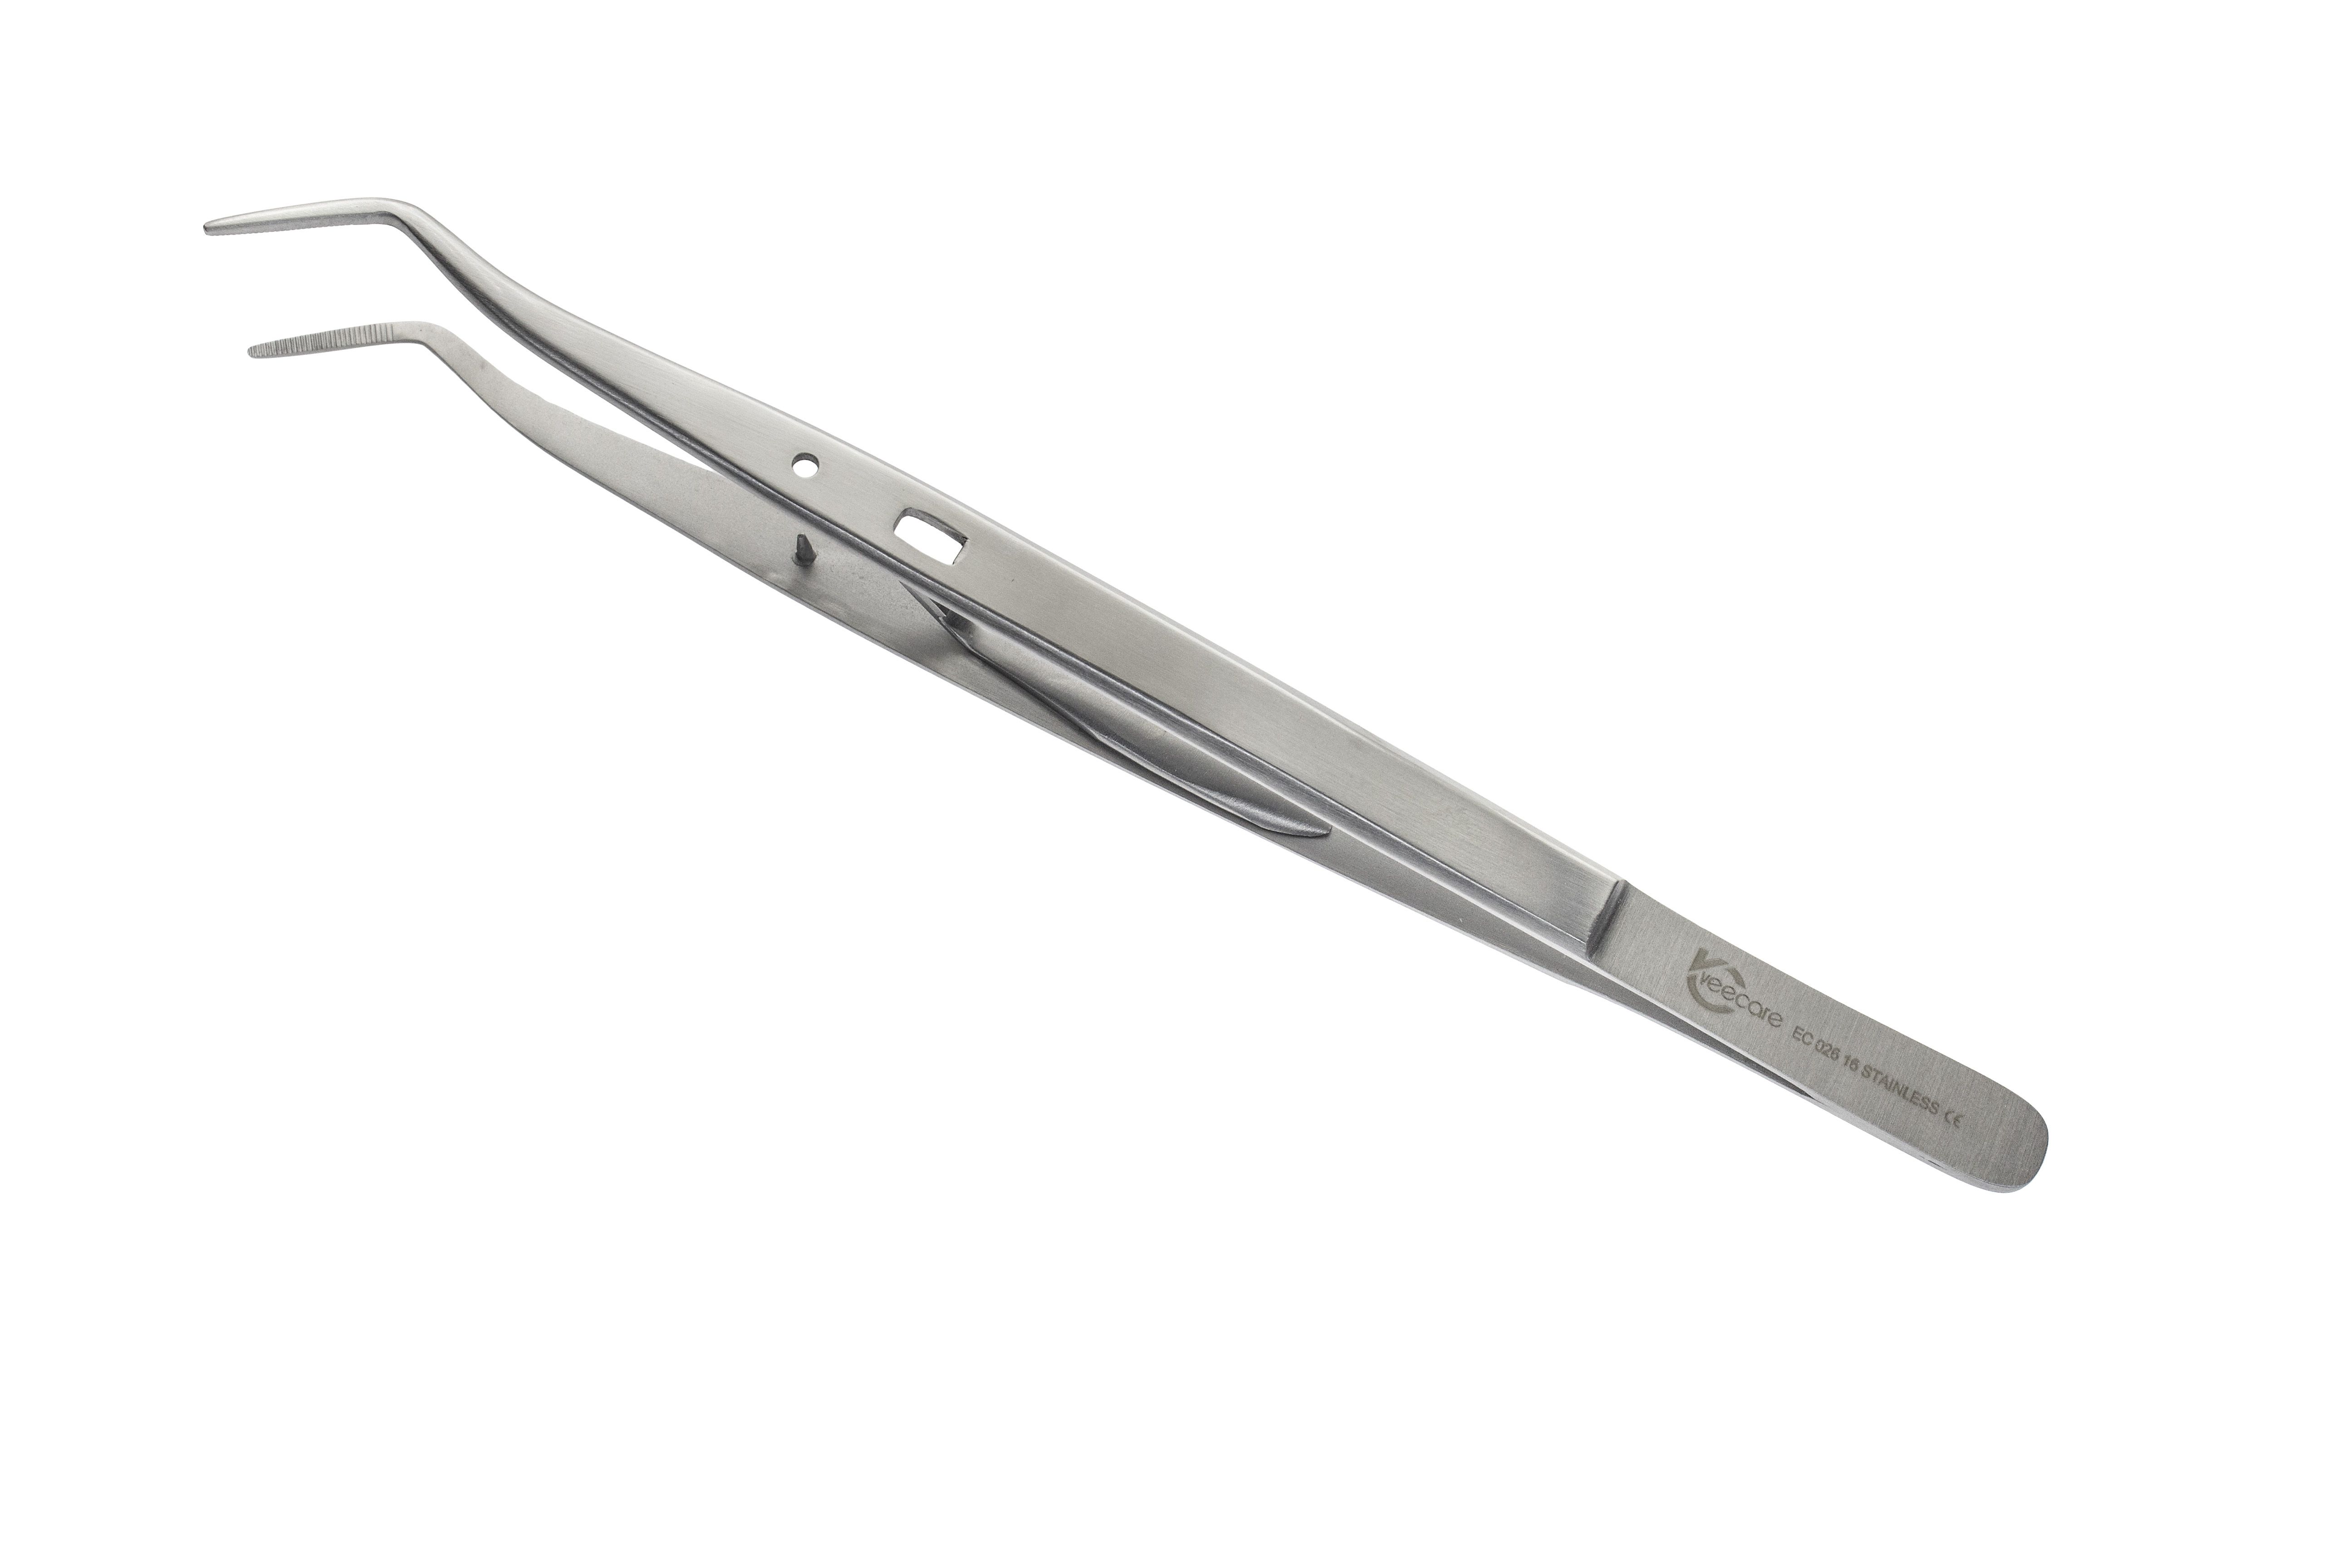 Locking Tweezer - Dental Instruments Online - Dental Products Online